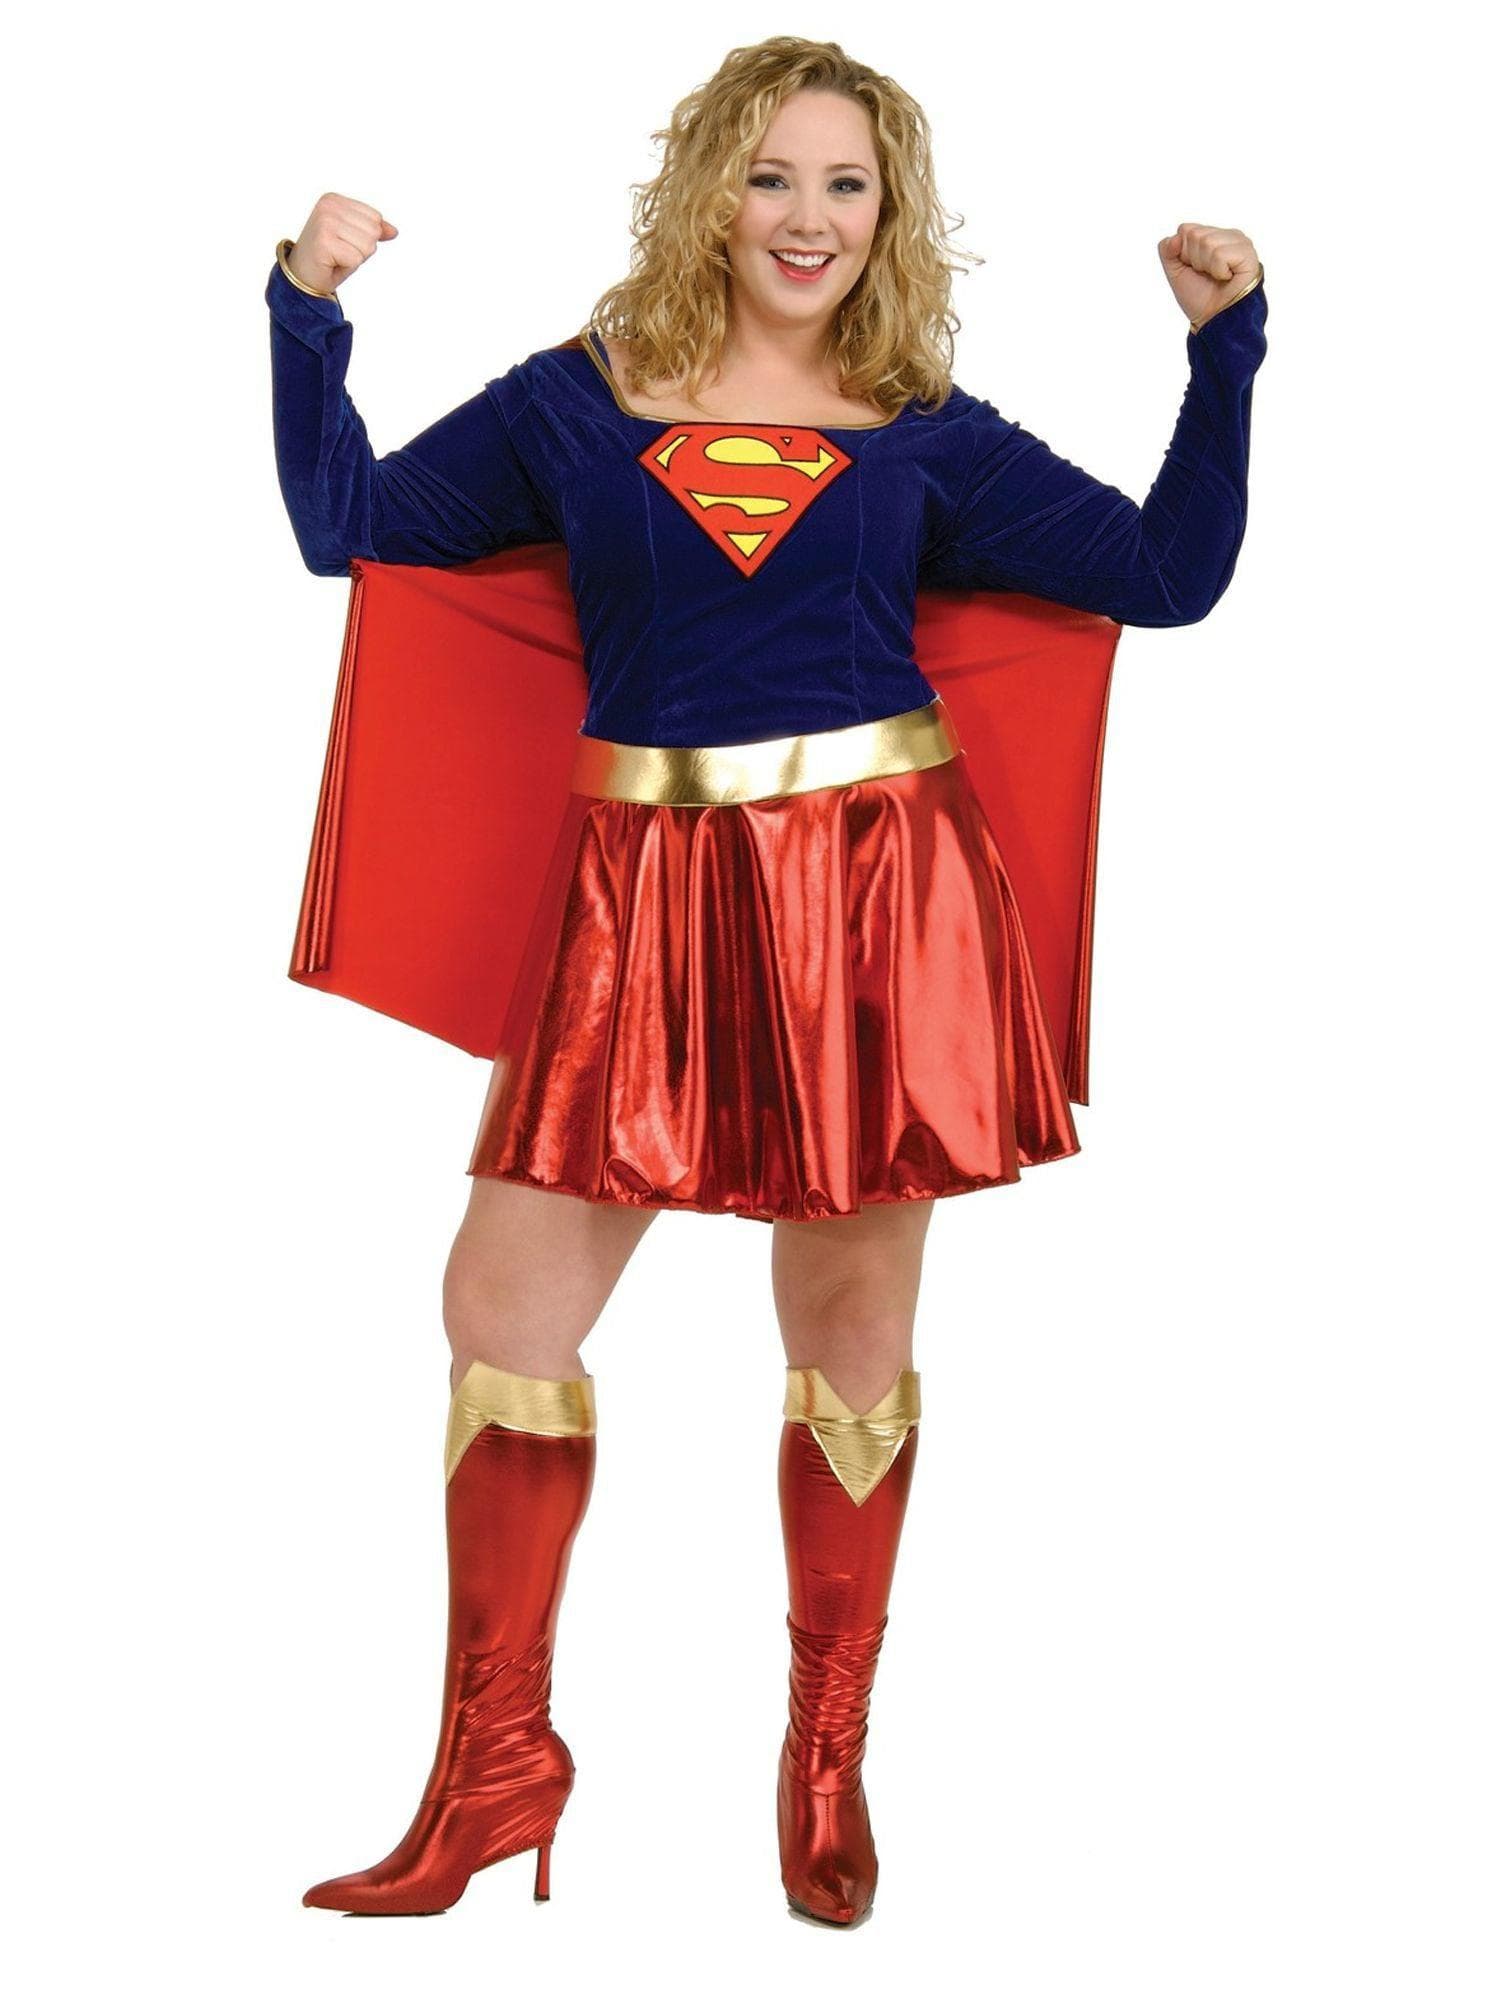 Adult DC Comics Supergirl Plus Size Costume - costumes.com